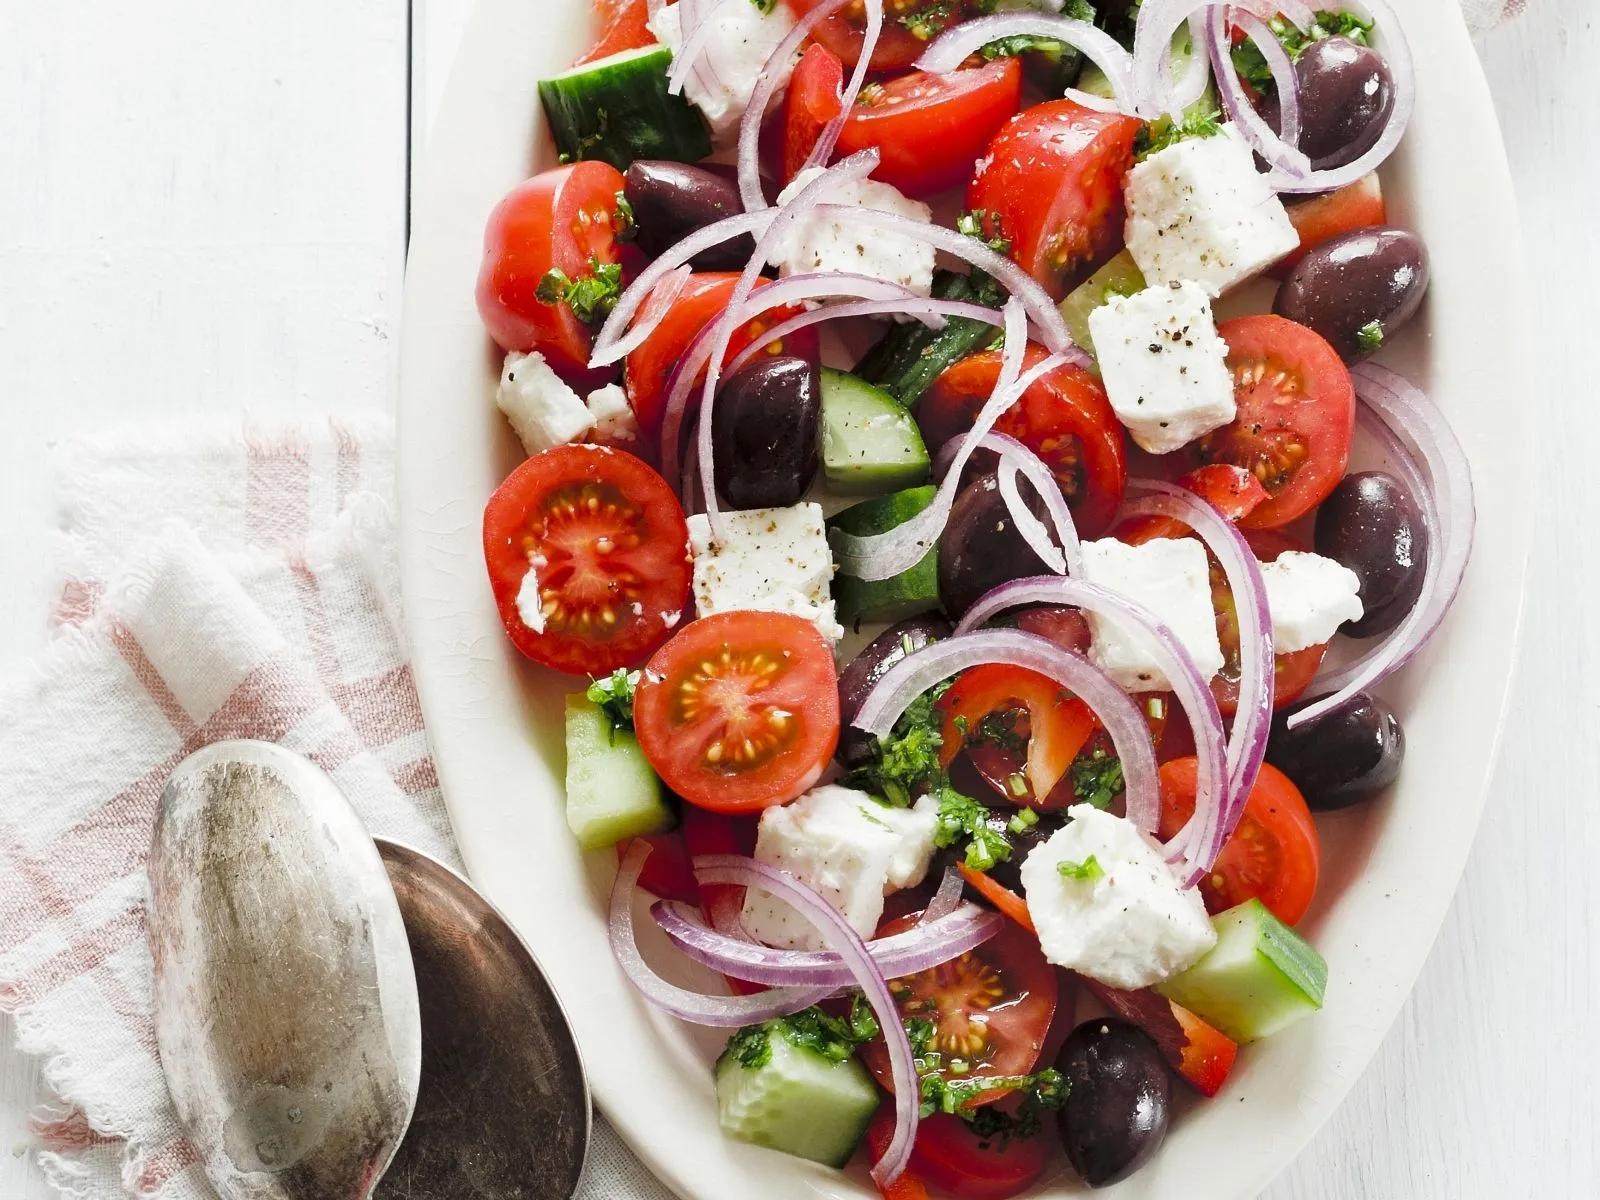 Salat nach griechischer Art | Rezept | Griechischer salat rezept ...